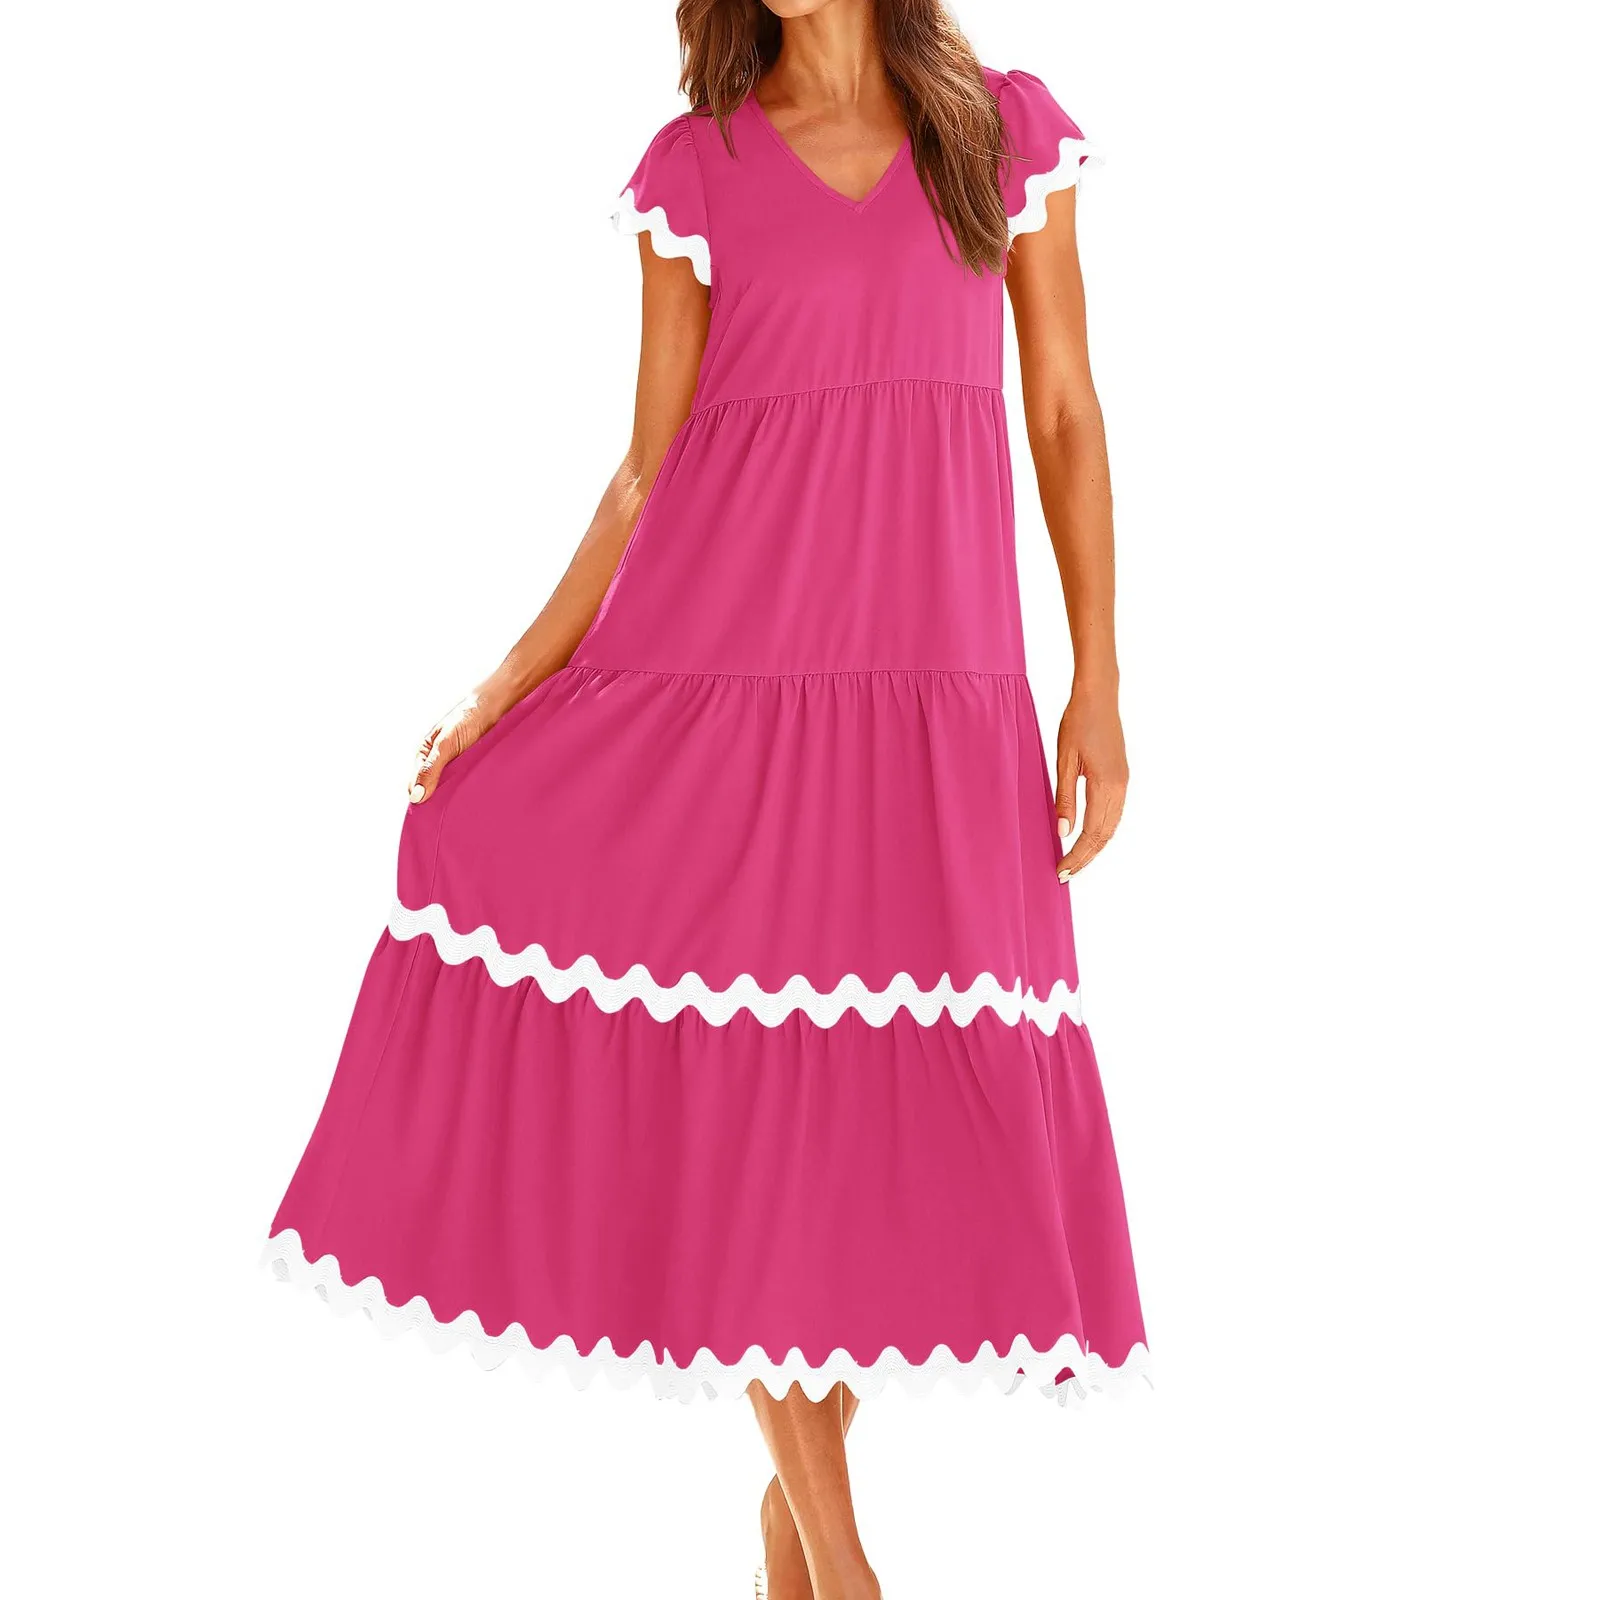 

Women's Short Sleeve Casual V Neck Sundress Knee-Length Dress Temperament Dresses платье женское платье летнее